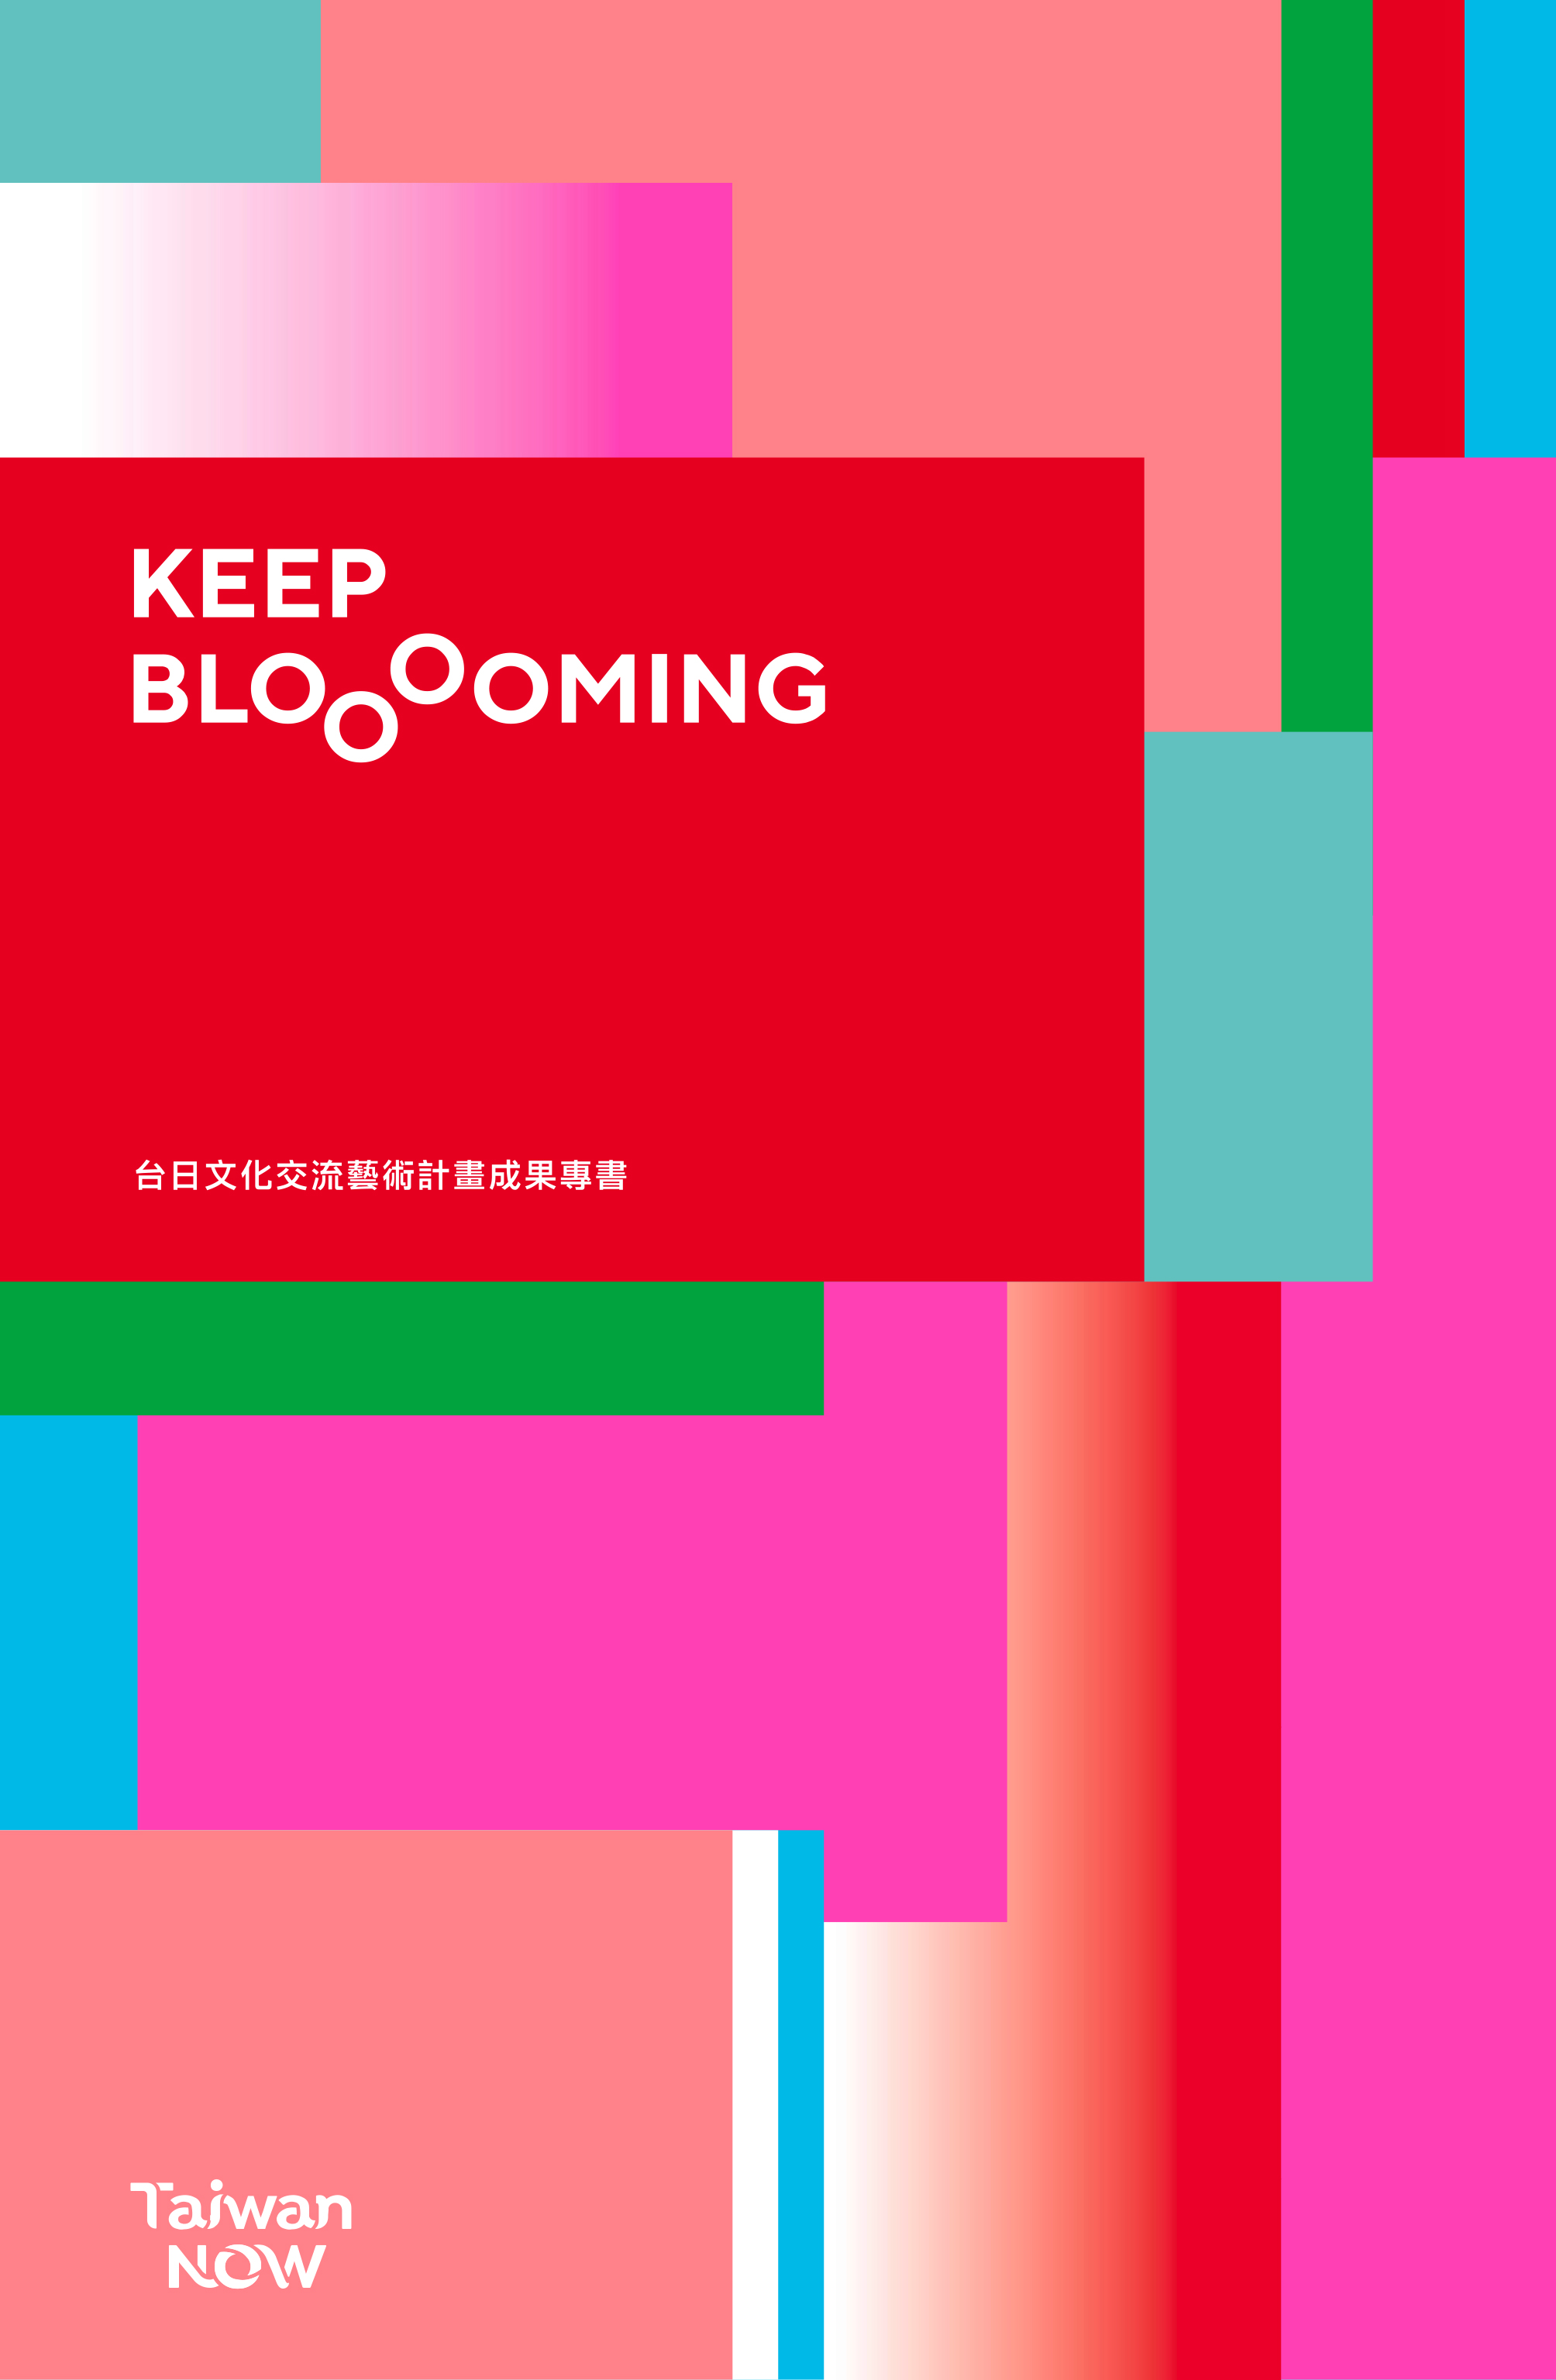 Keep Blooming: Taiwan Now 臺日文化交流藝術計畫成果專書（中日文/中英文版）封面